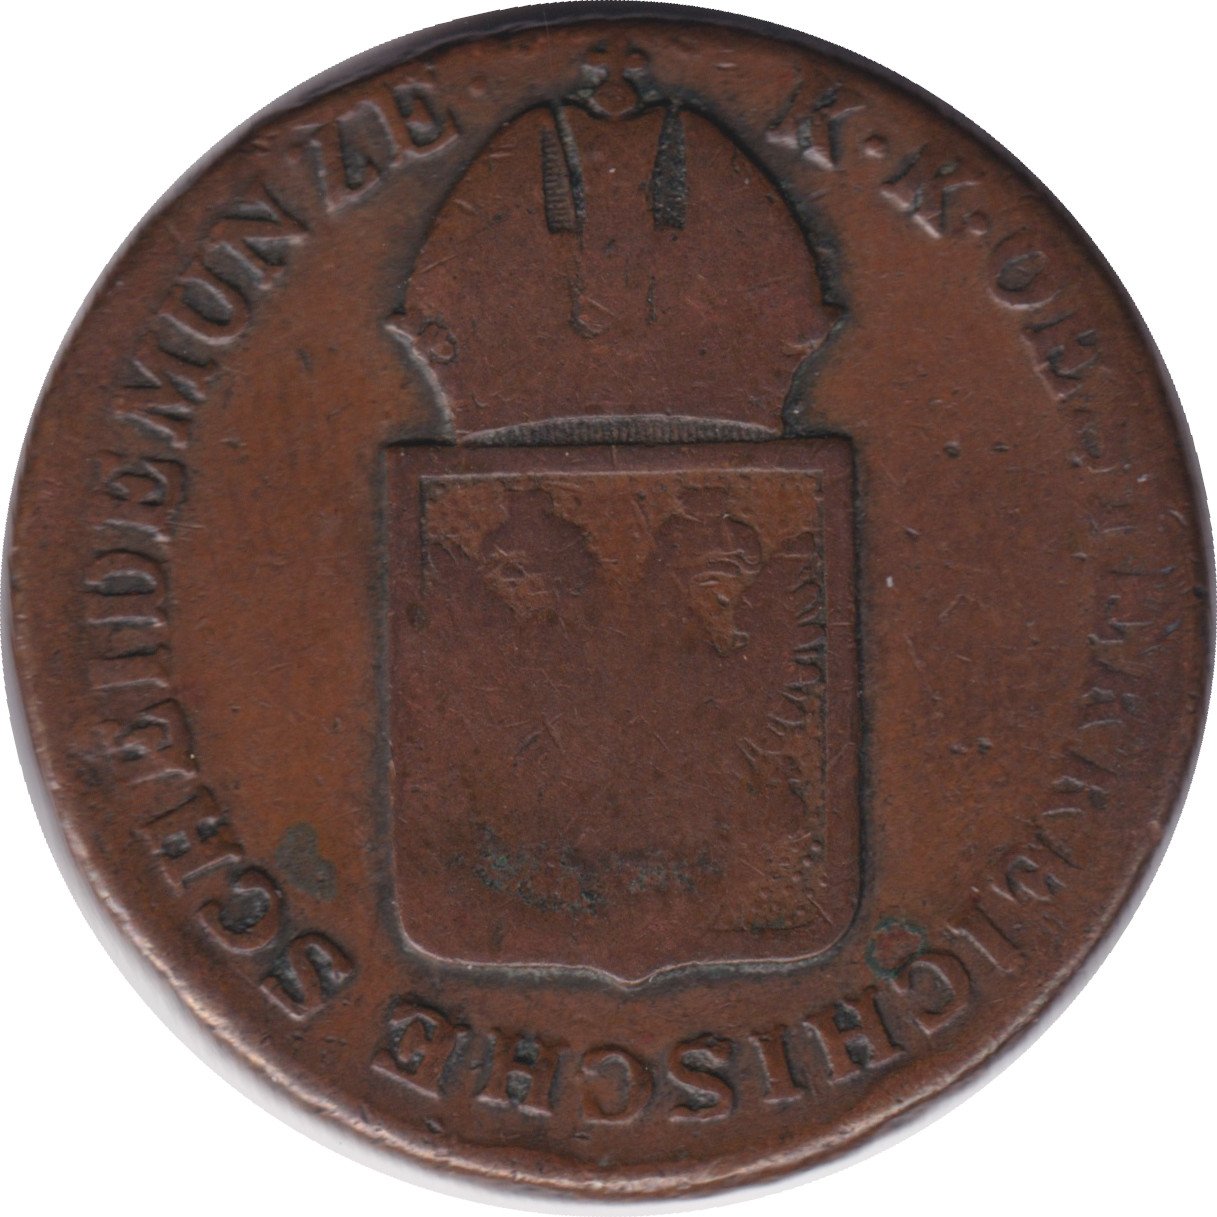 1 kreuzer - Franz II - Shield